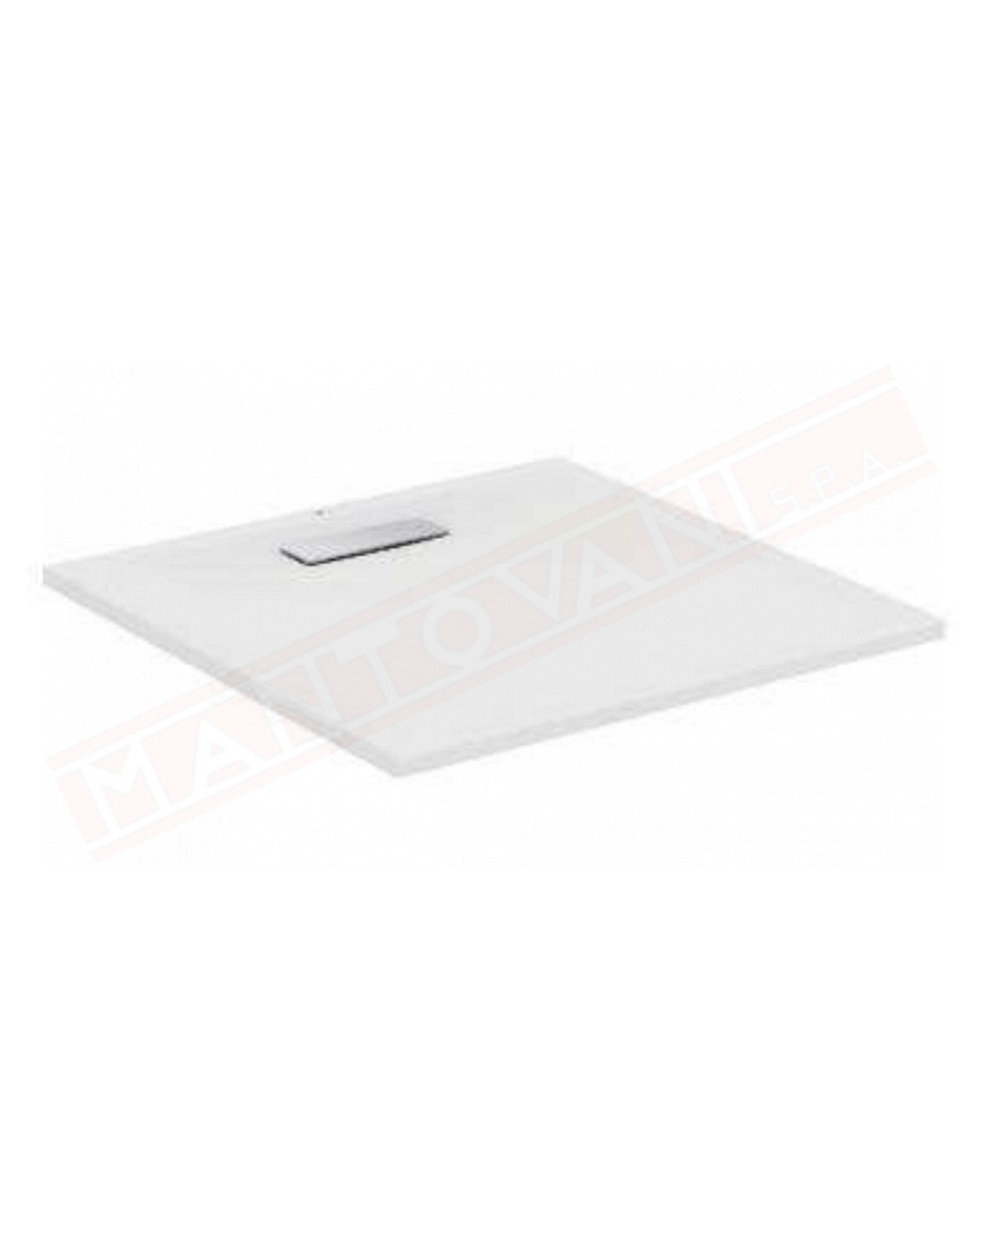 Ideal Standard ultraflat new bianco lucido 80x80x2.5 piatto doccia ultrasottile in acrilico in pasta senza piletta t4493aa